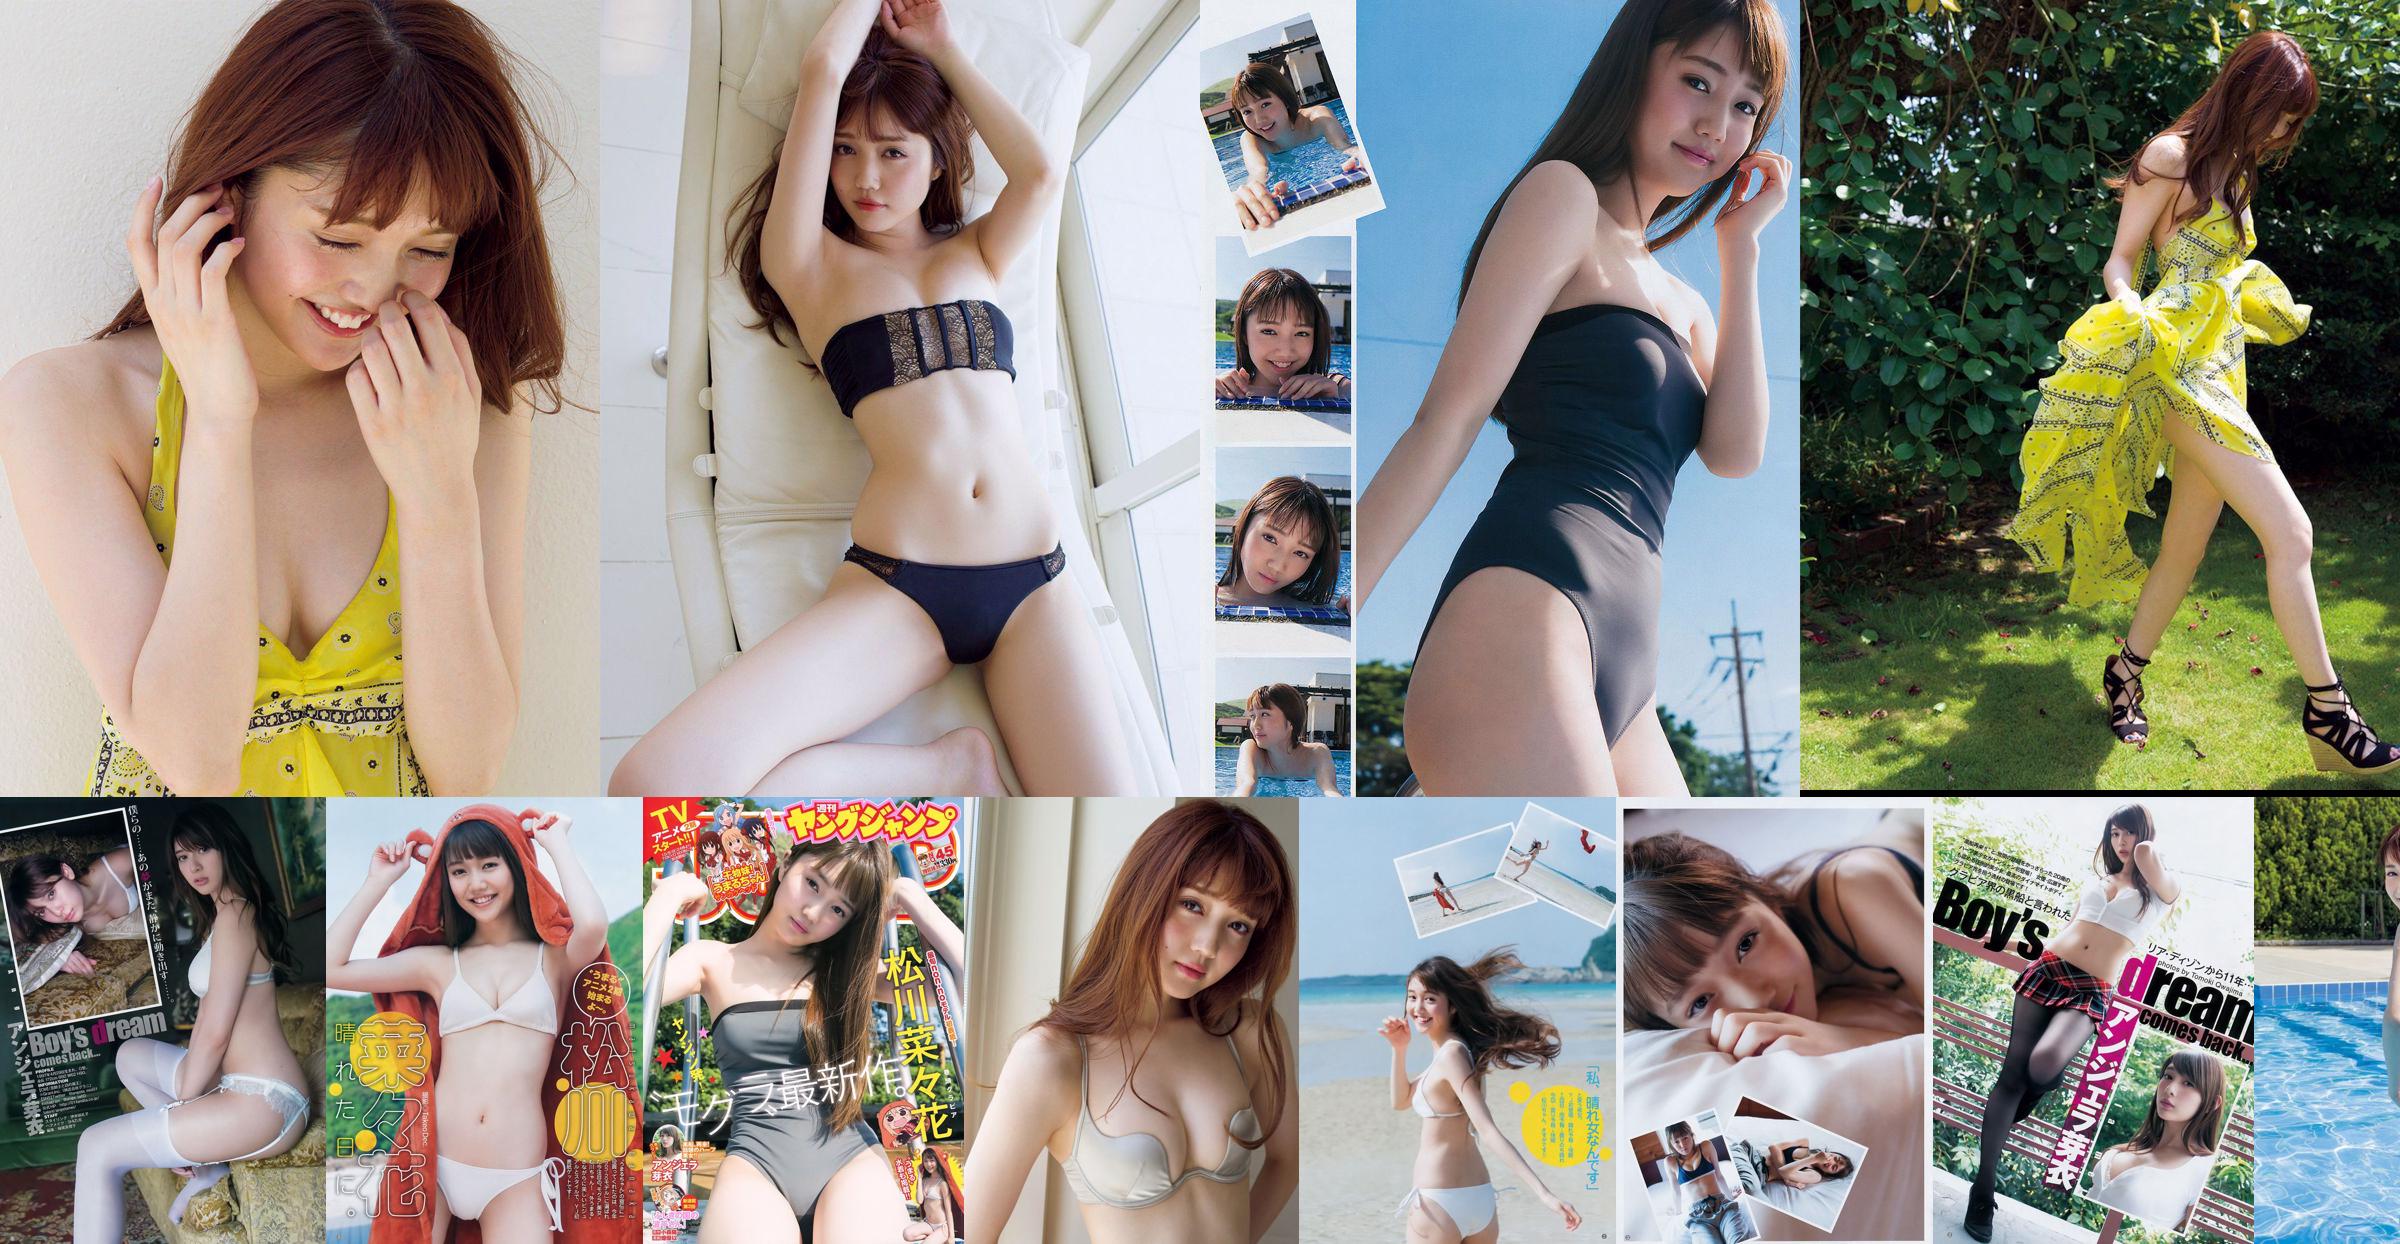 [ПЯТНИЦА] Нанака Мацукава << Популярная модель в купальнике - потрясающее свидание с 20-летней сексуальной привлекательностью (с видео) >> Фото No.e85ffe Страница 2